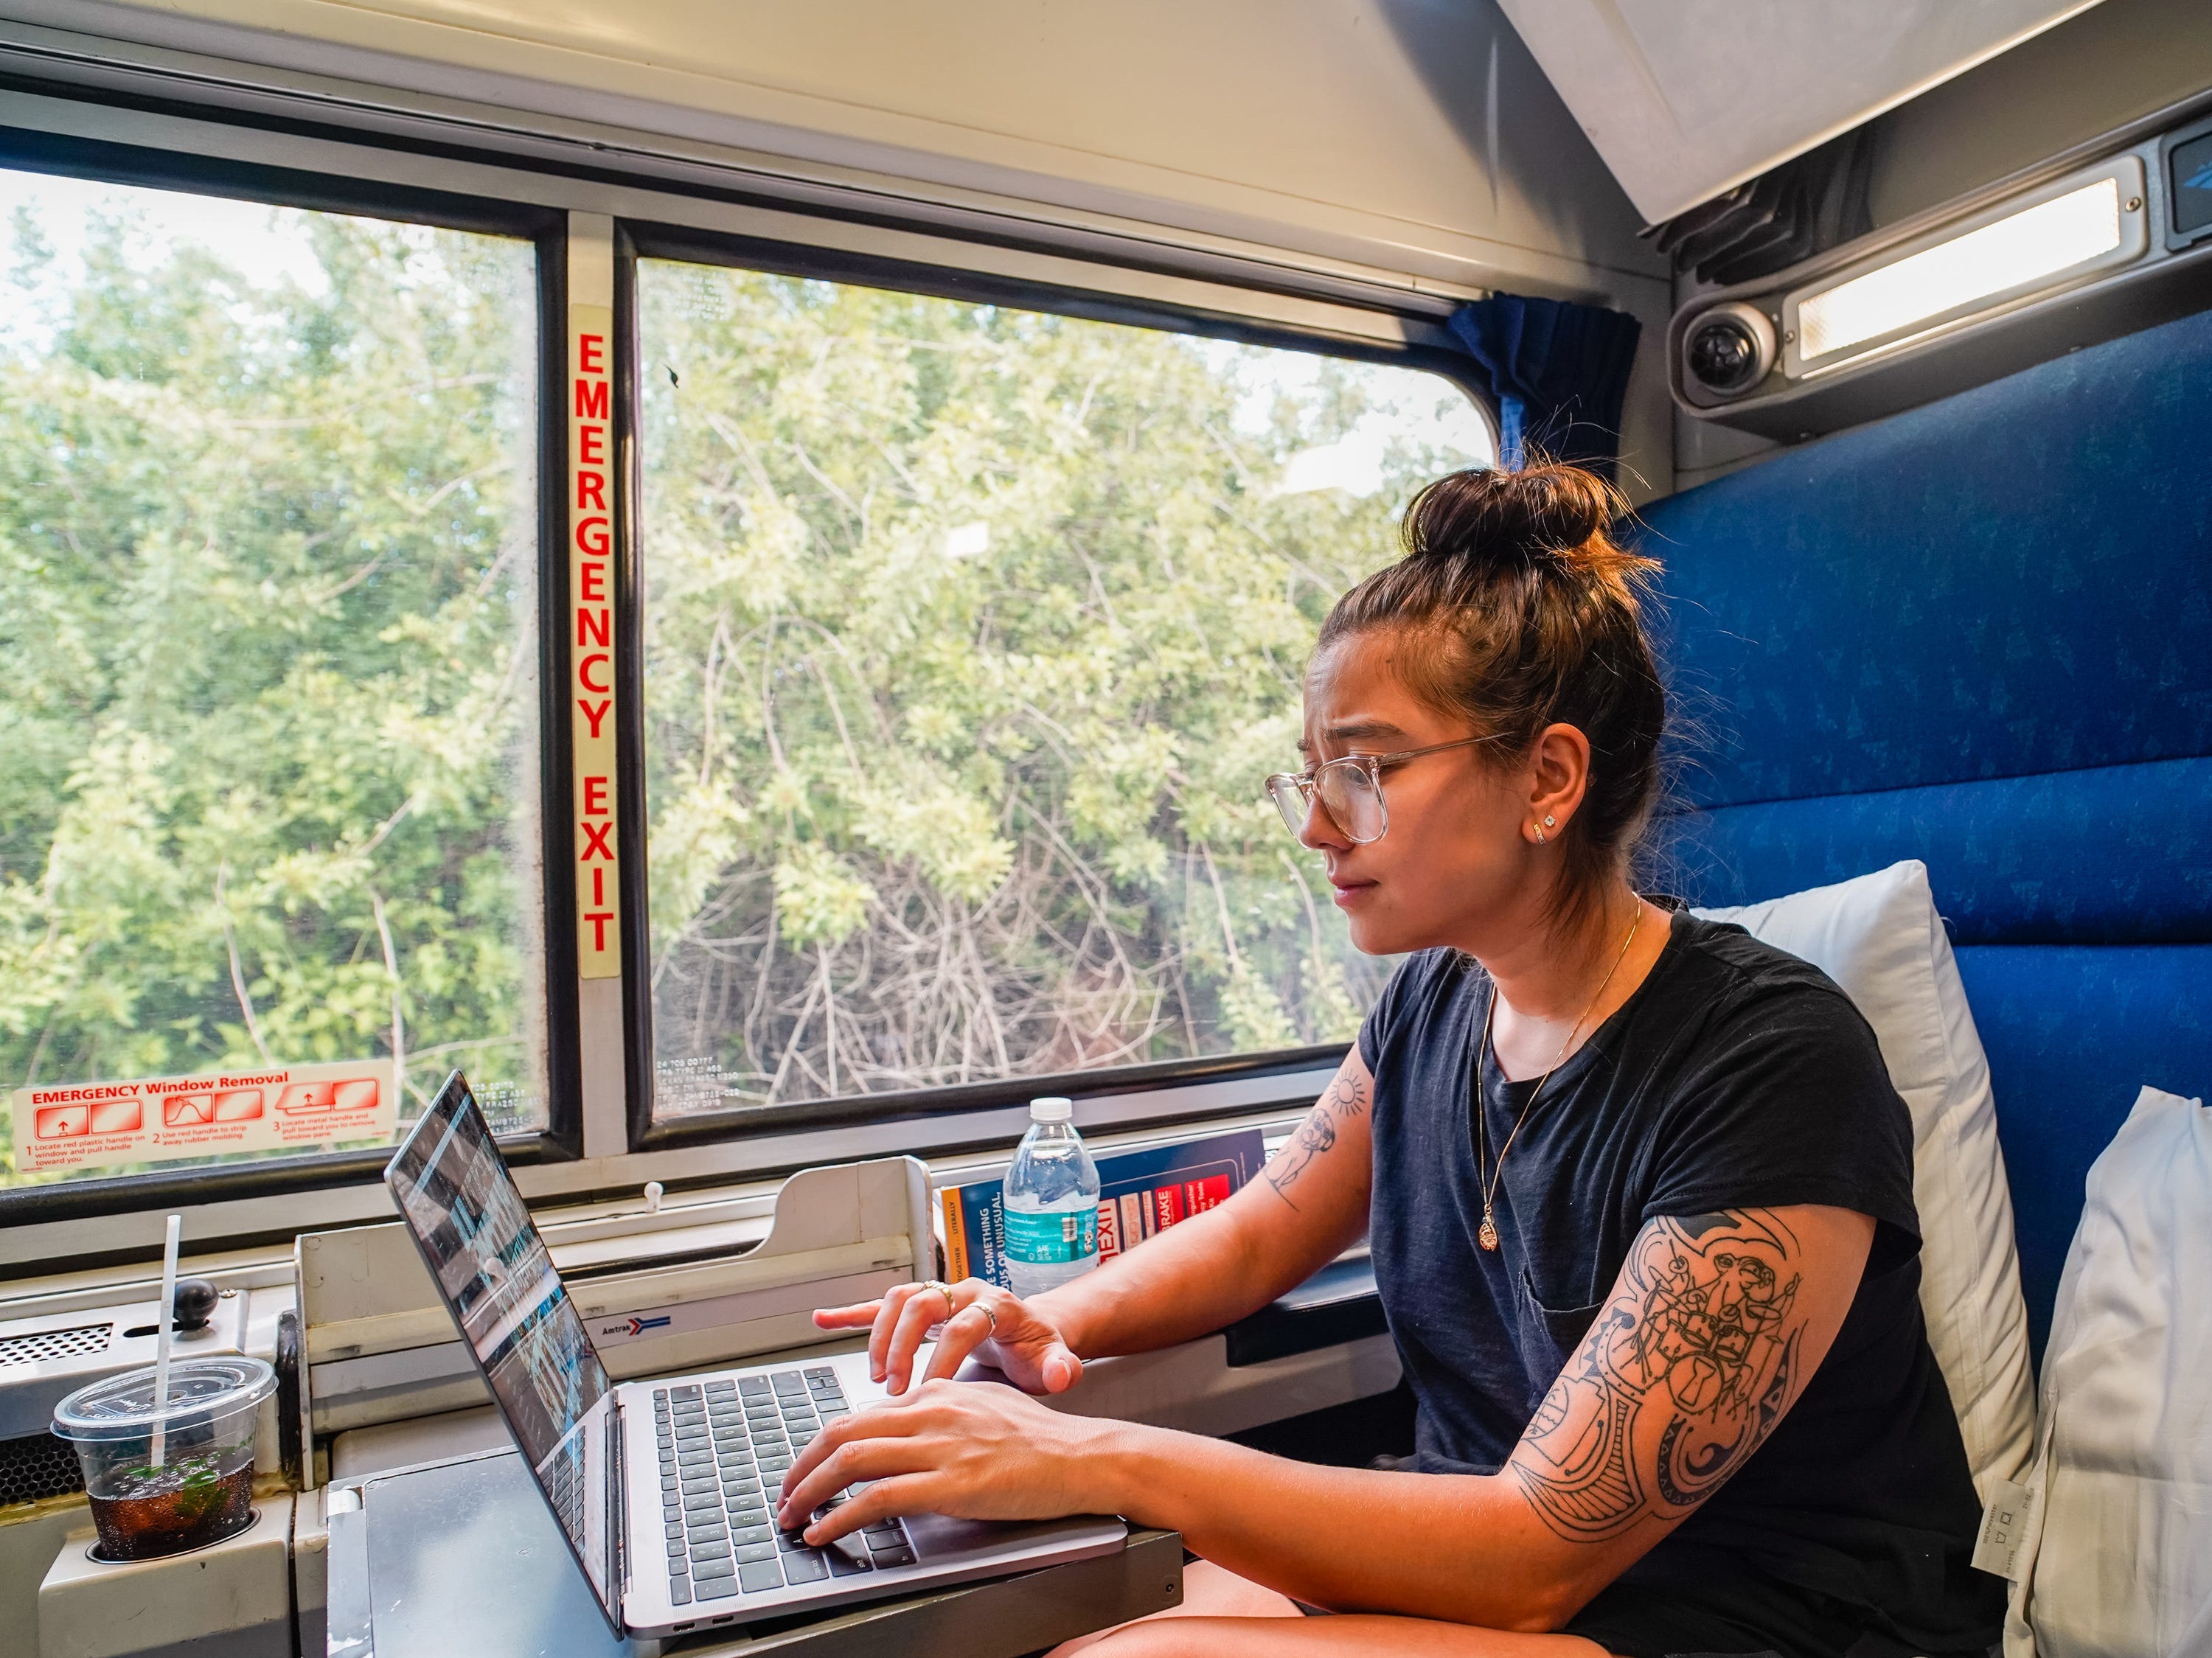 Die Autorin benutzt ihren Laptop, während sie auf einem blauen Sitz sitzt, mit einem Fenster zu ihrer Rechten, durch das man das Grün sehen kann